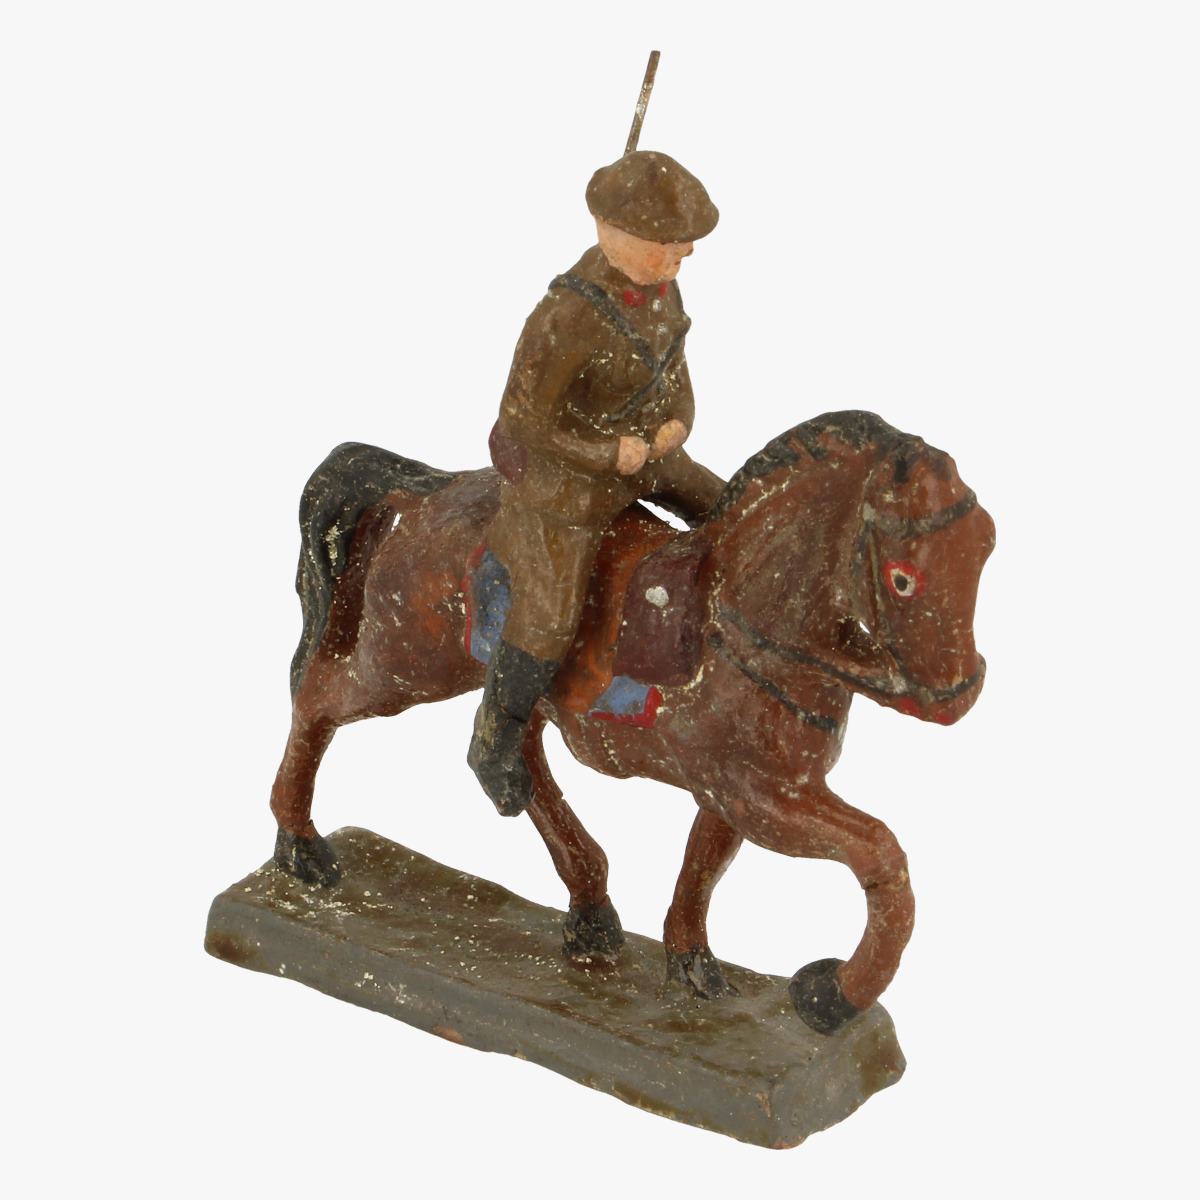 Afbeeldingen van elastolin soldaatje met paard 